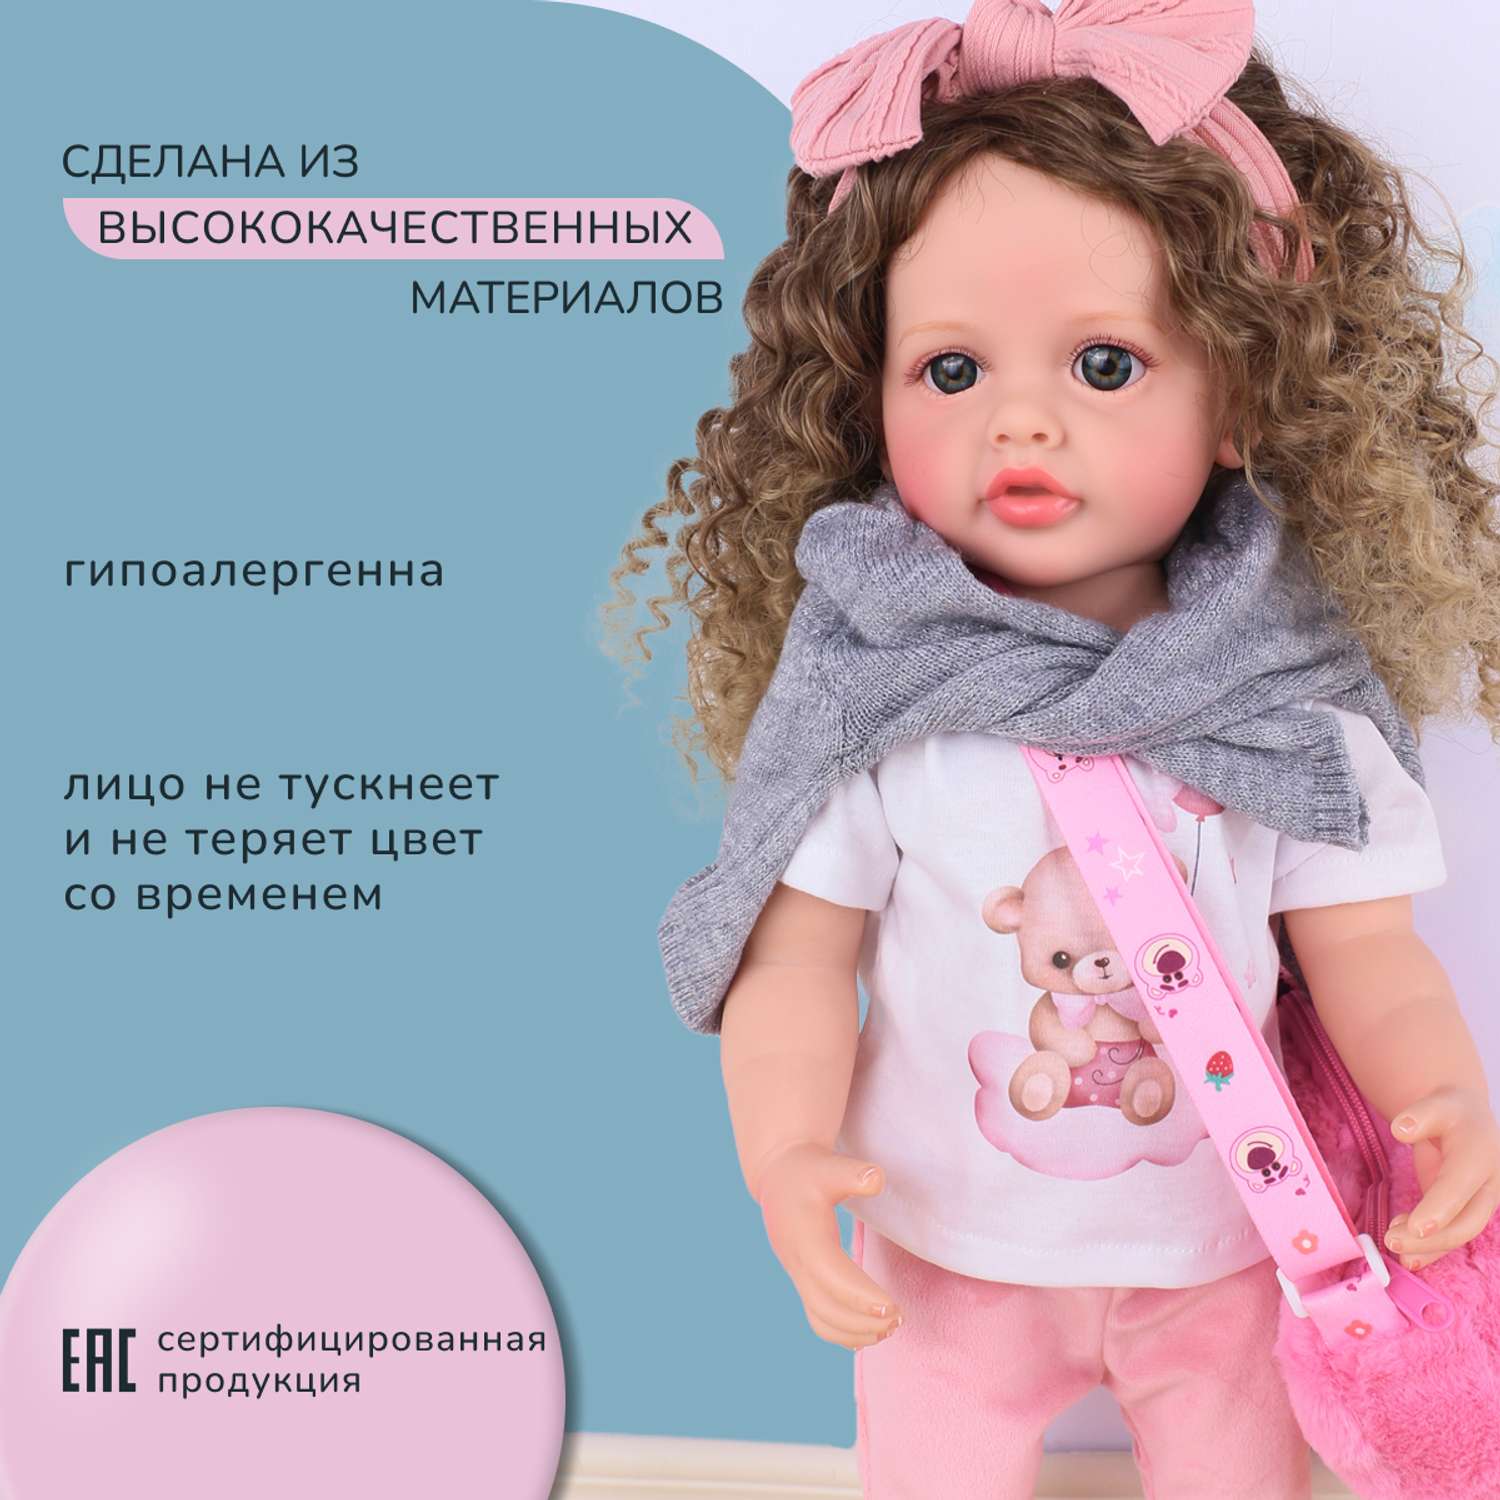 Кукла Реборн QA BABY Маргарита большая пупс набор игрушки для девочки 55 см 5552 - фото 13